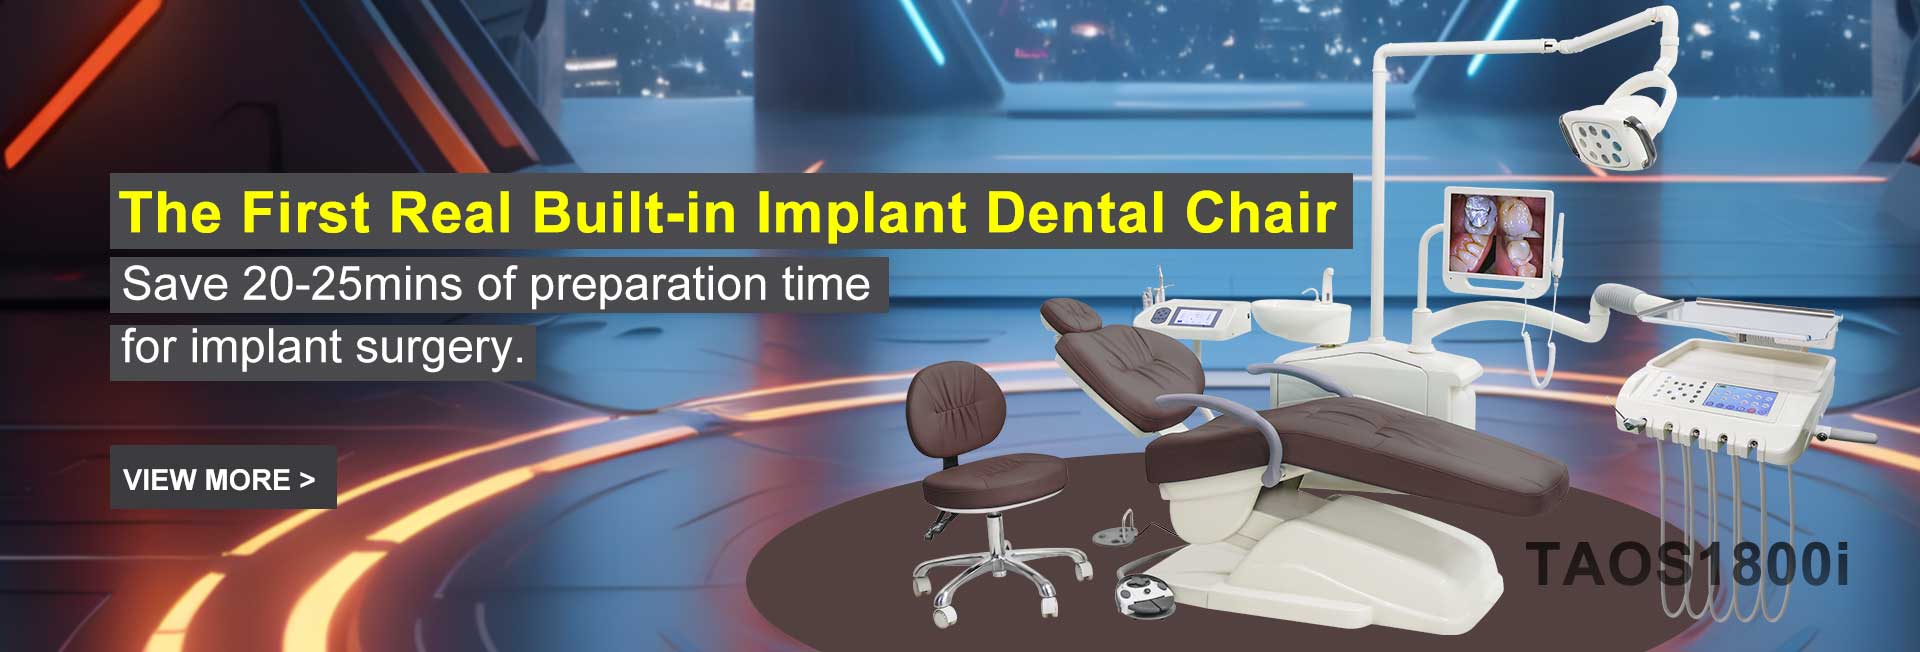 Cadira quirúrgica d'implants dentals TAOS1800i